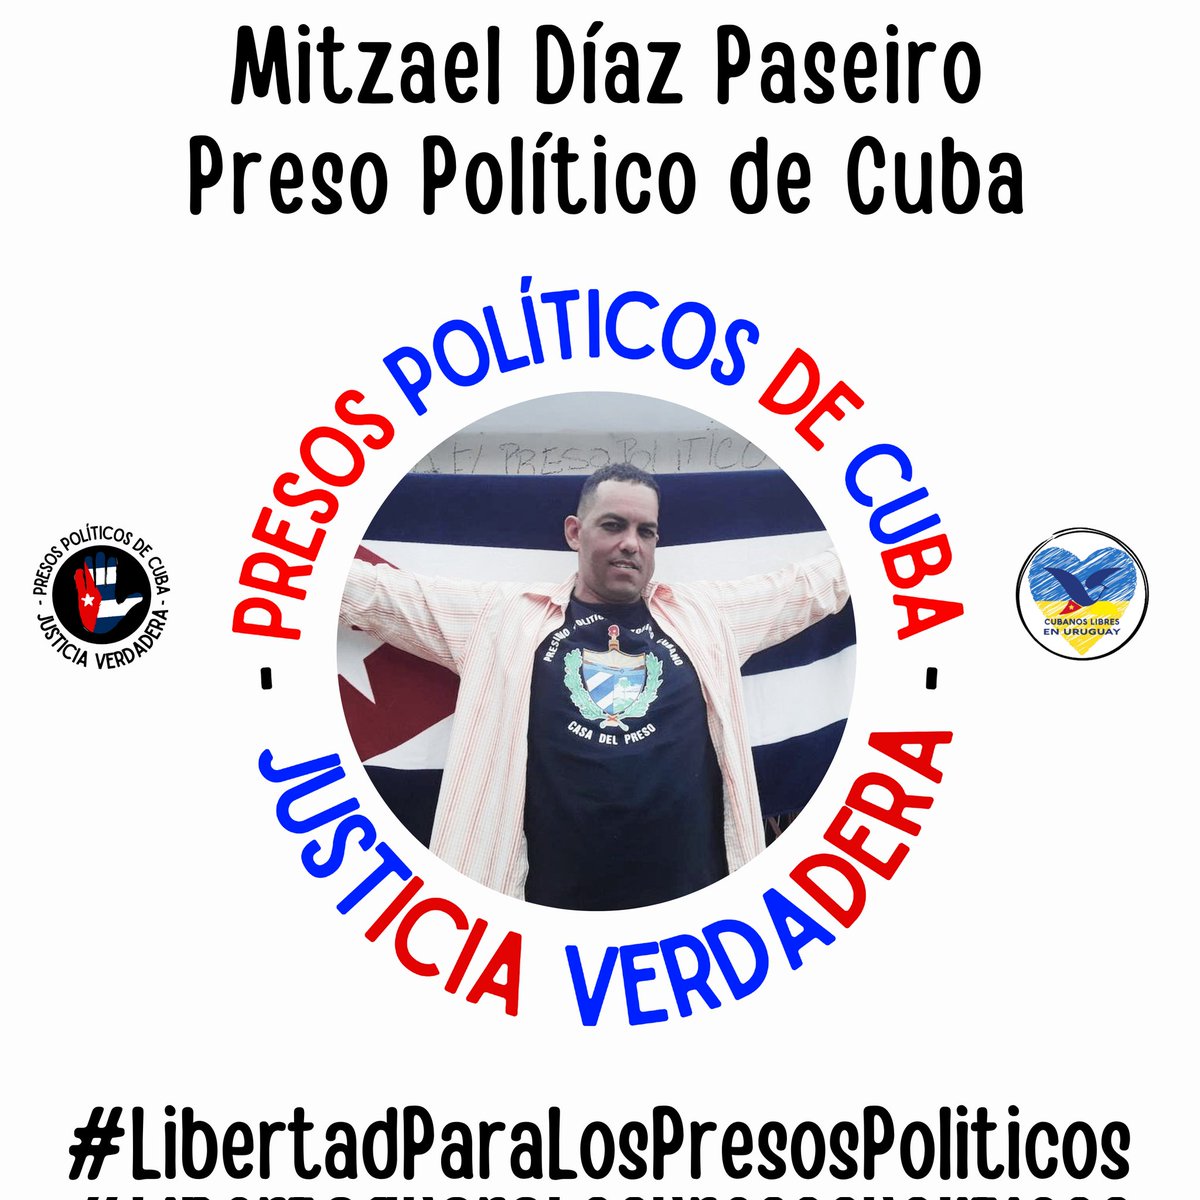 #Twittazo Libertad para Mitzael Díaz Paseiro.
.
“Sin aire, la tierra muere. Sin libertad, como sin aire propio y esencial, nada vive.” -José Martí-
.
.
.
#HastaQueSeanLibres 
#PresosPoliticosDeCuba
#LibertadYjusticiaParaCuba